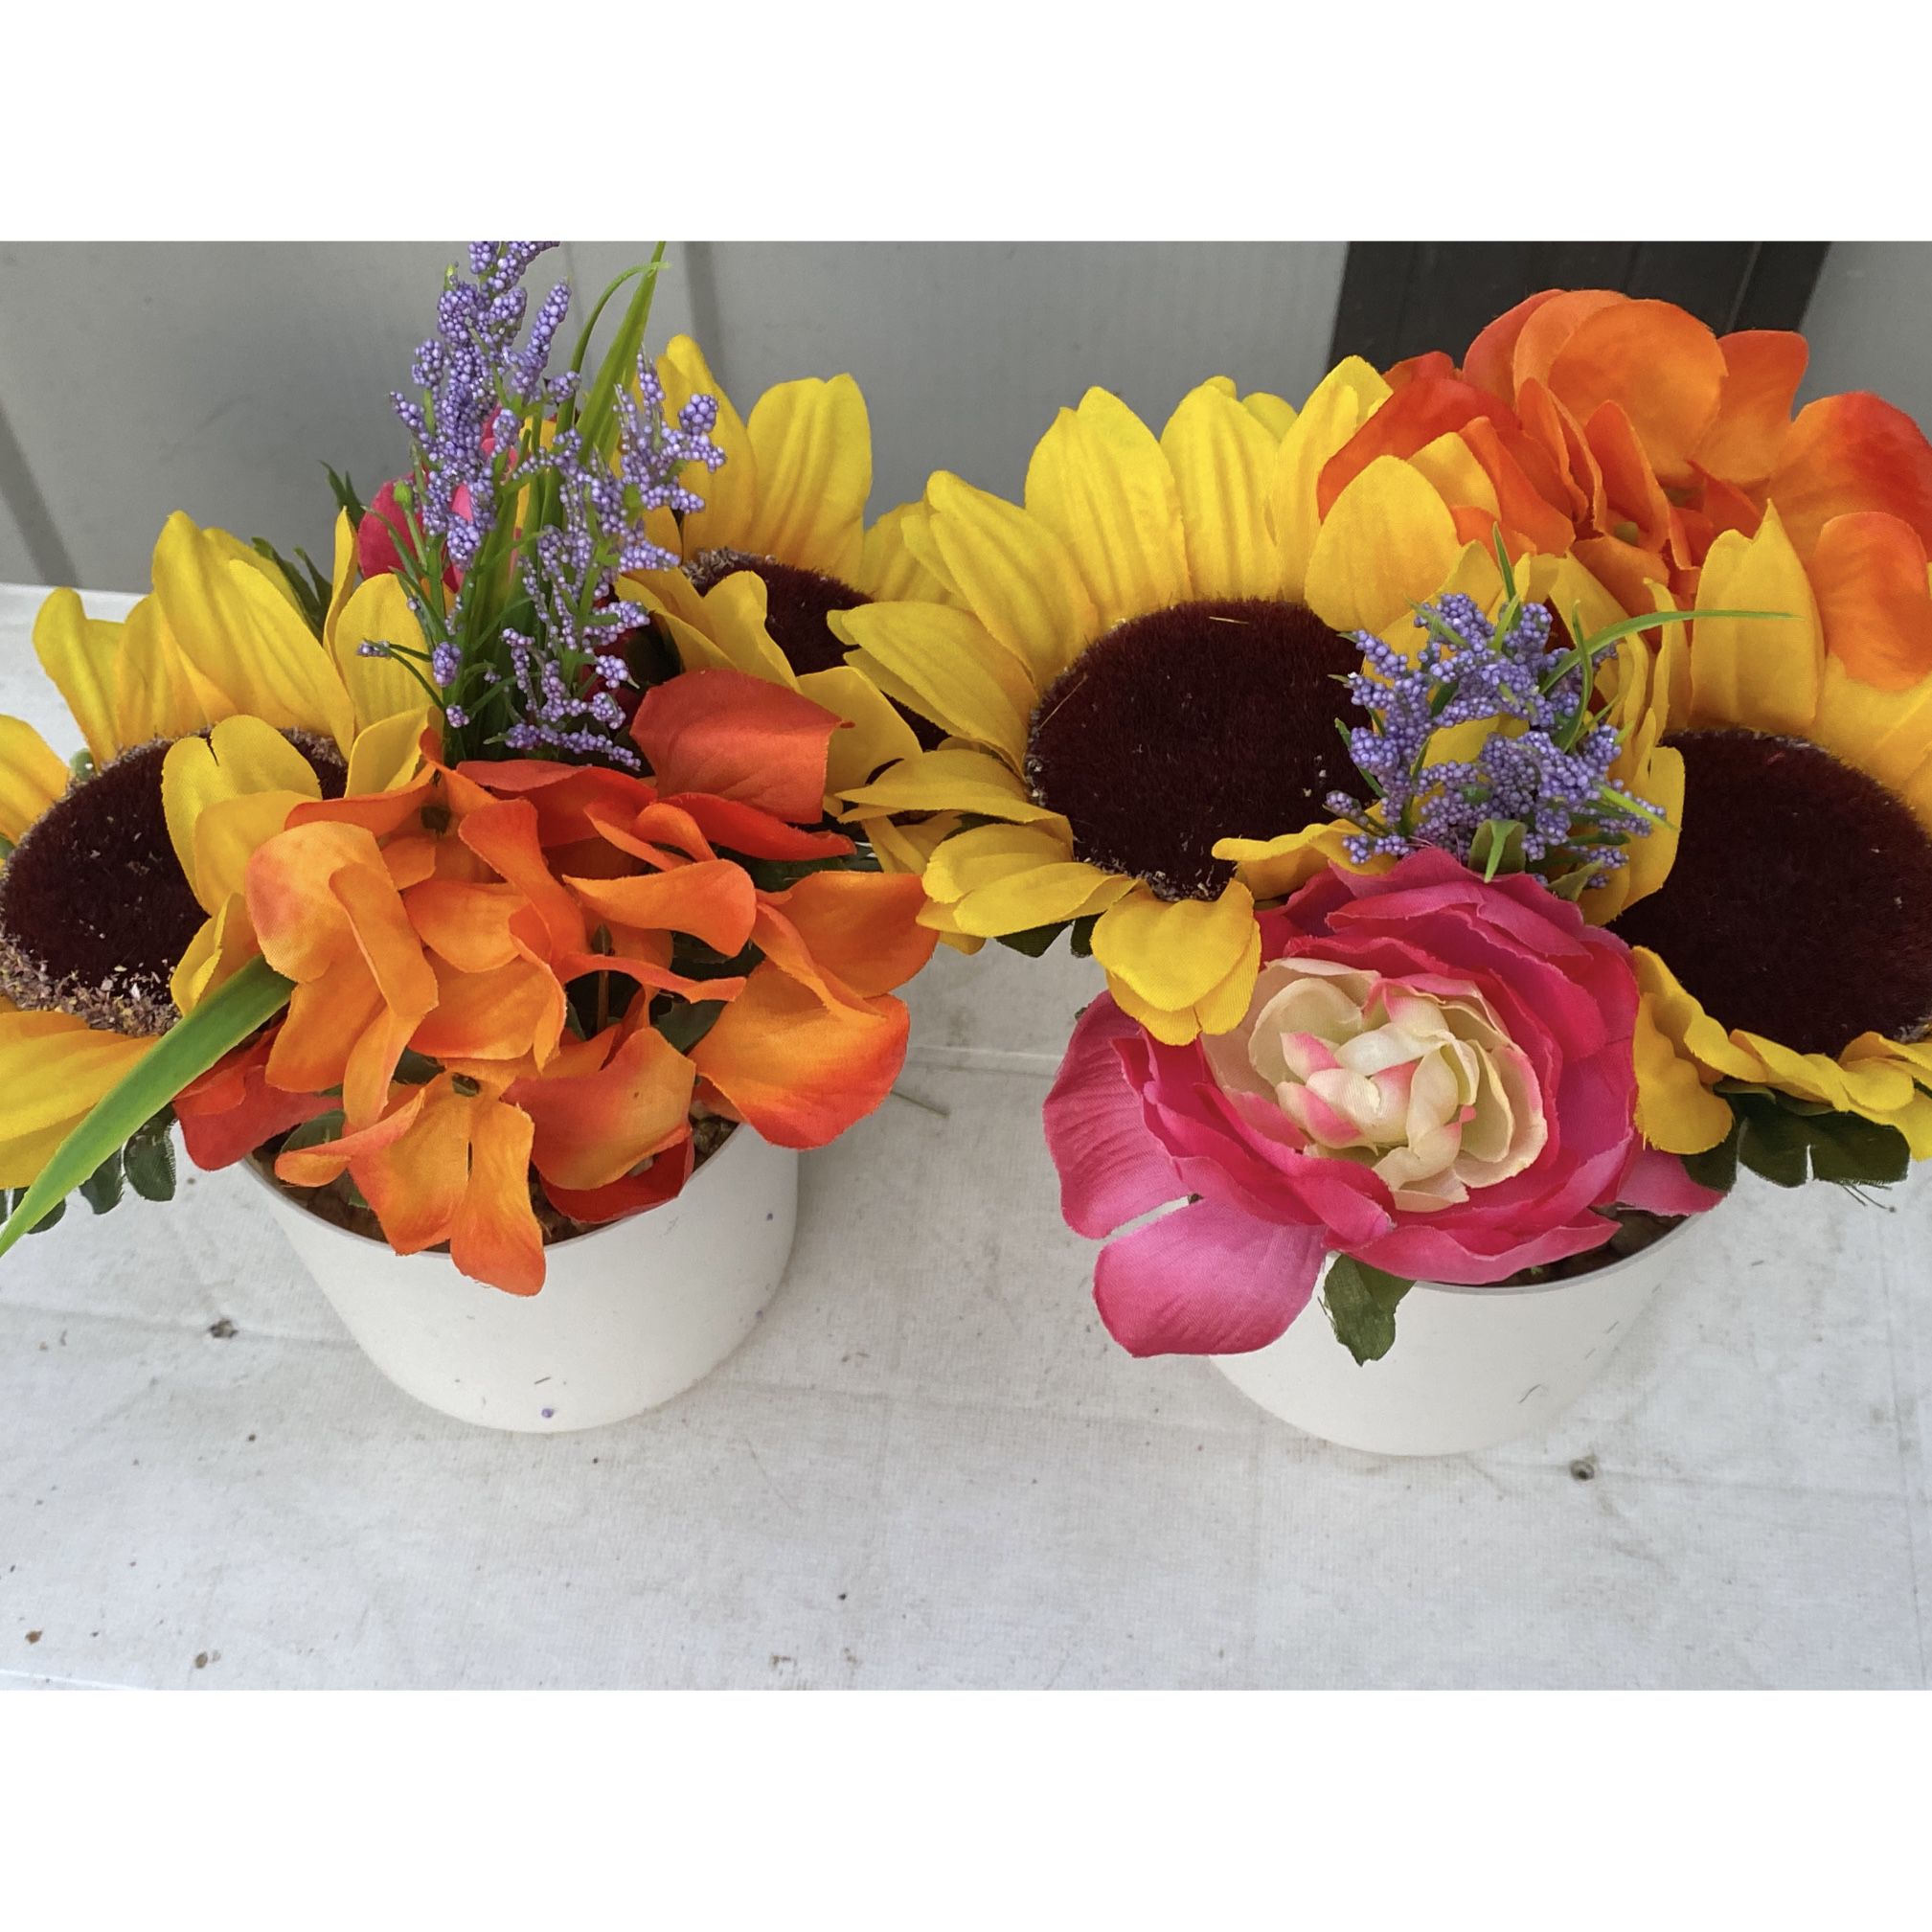 Artificial Decorative Flower Pots.. $1.50 each